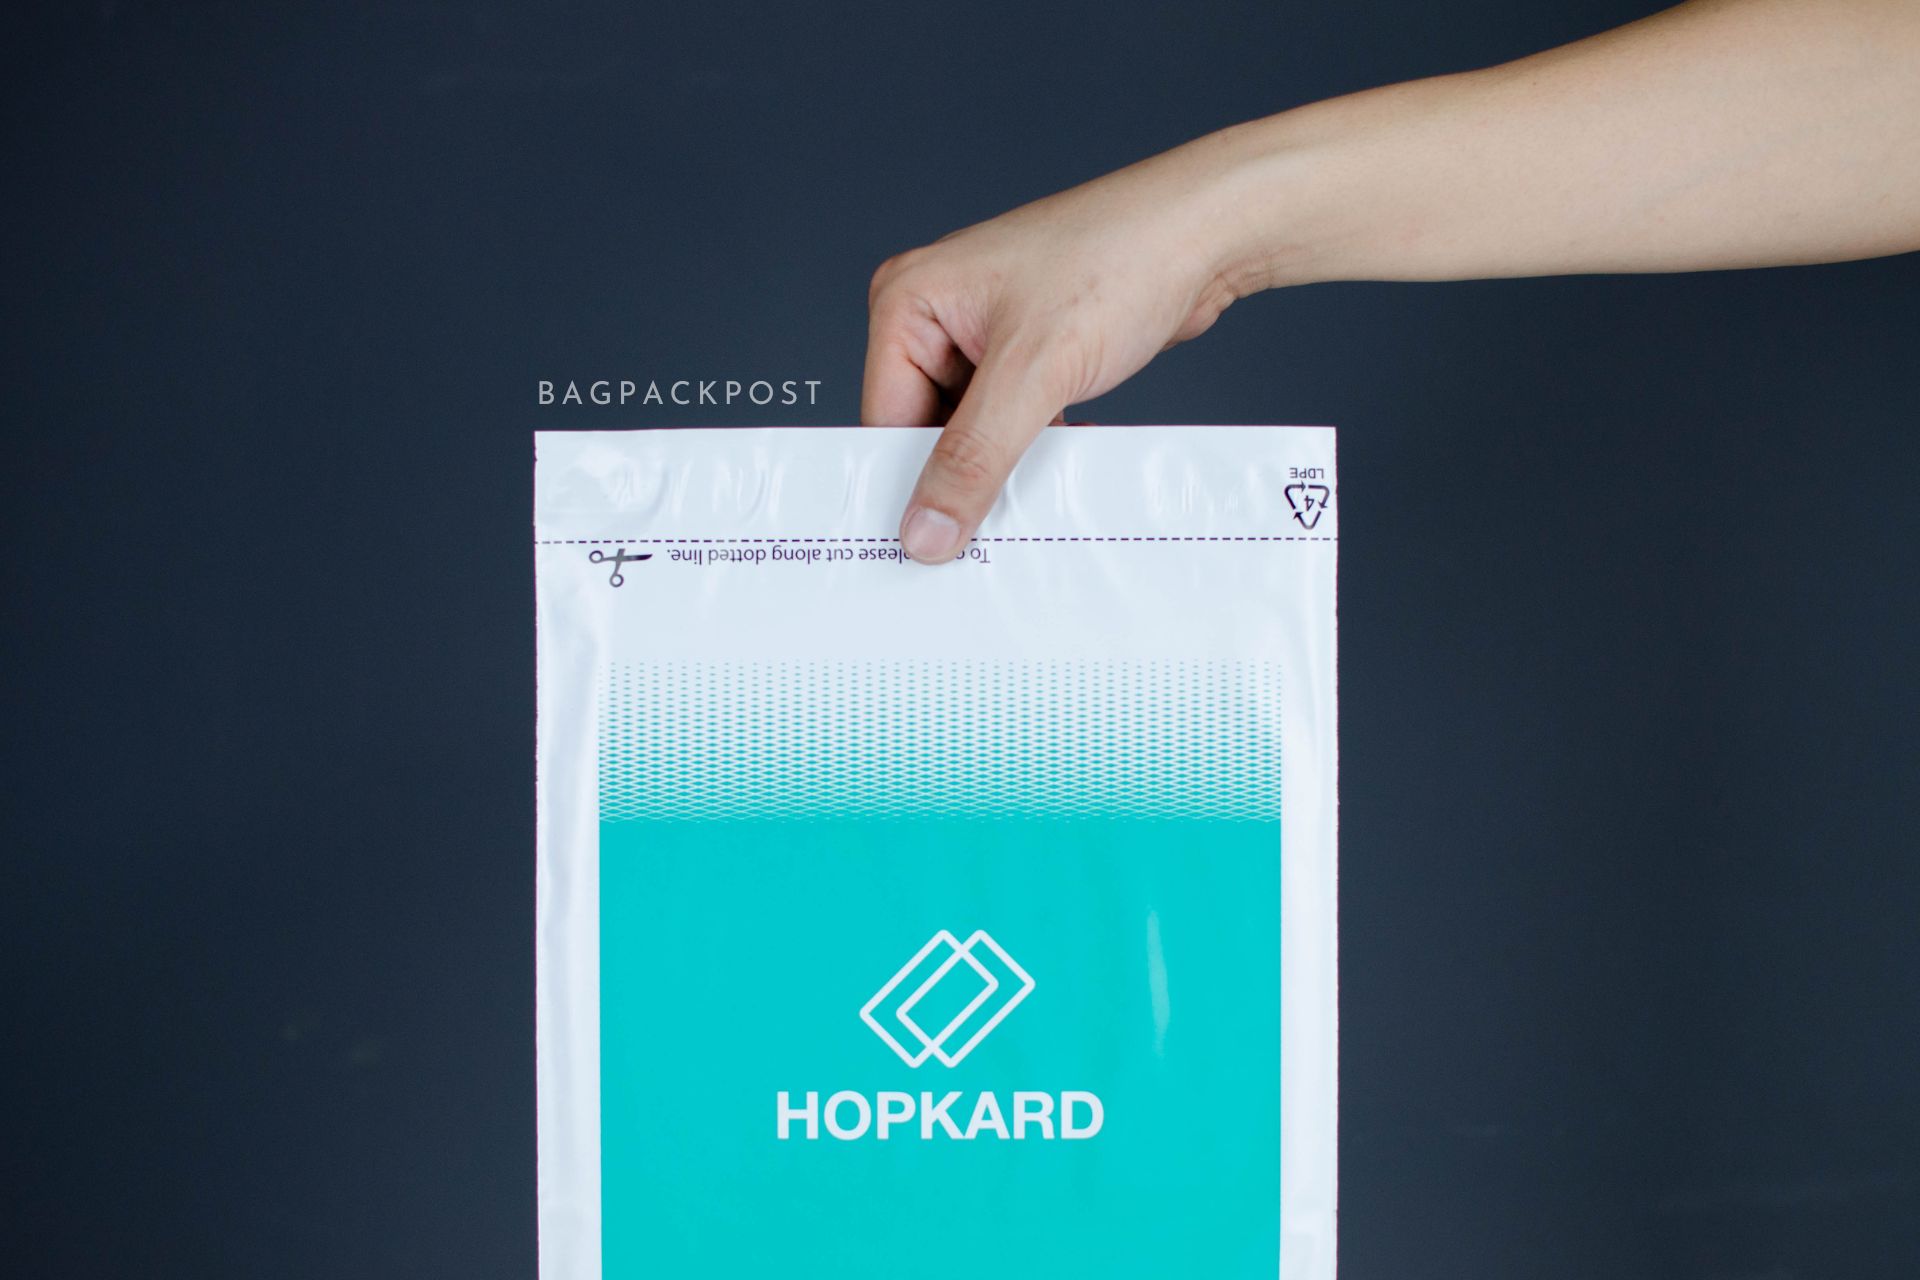 ผลิตถุงไปรษณีย์ ถุงพัสดุ ซองไปรษณีย์พิมพ์ลาย HOPKARD ซองไปรษณีย์สีขาว ถุงไปรษณีย์พิมพ์ลาย 1 BagPackPost